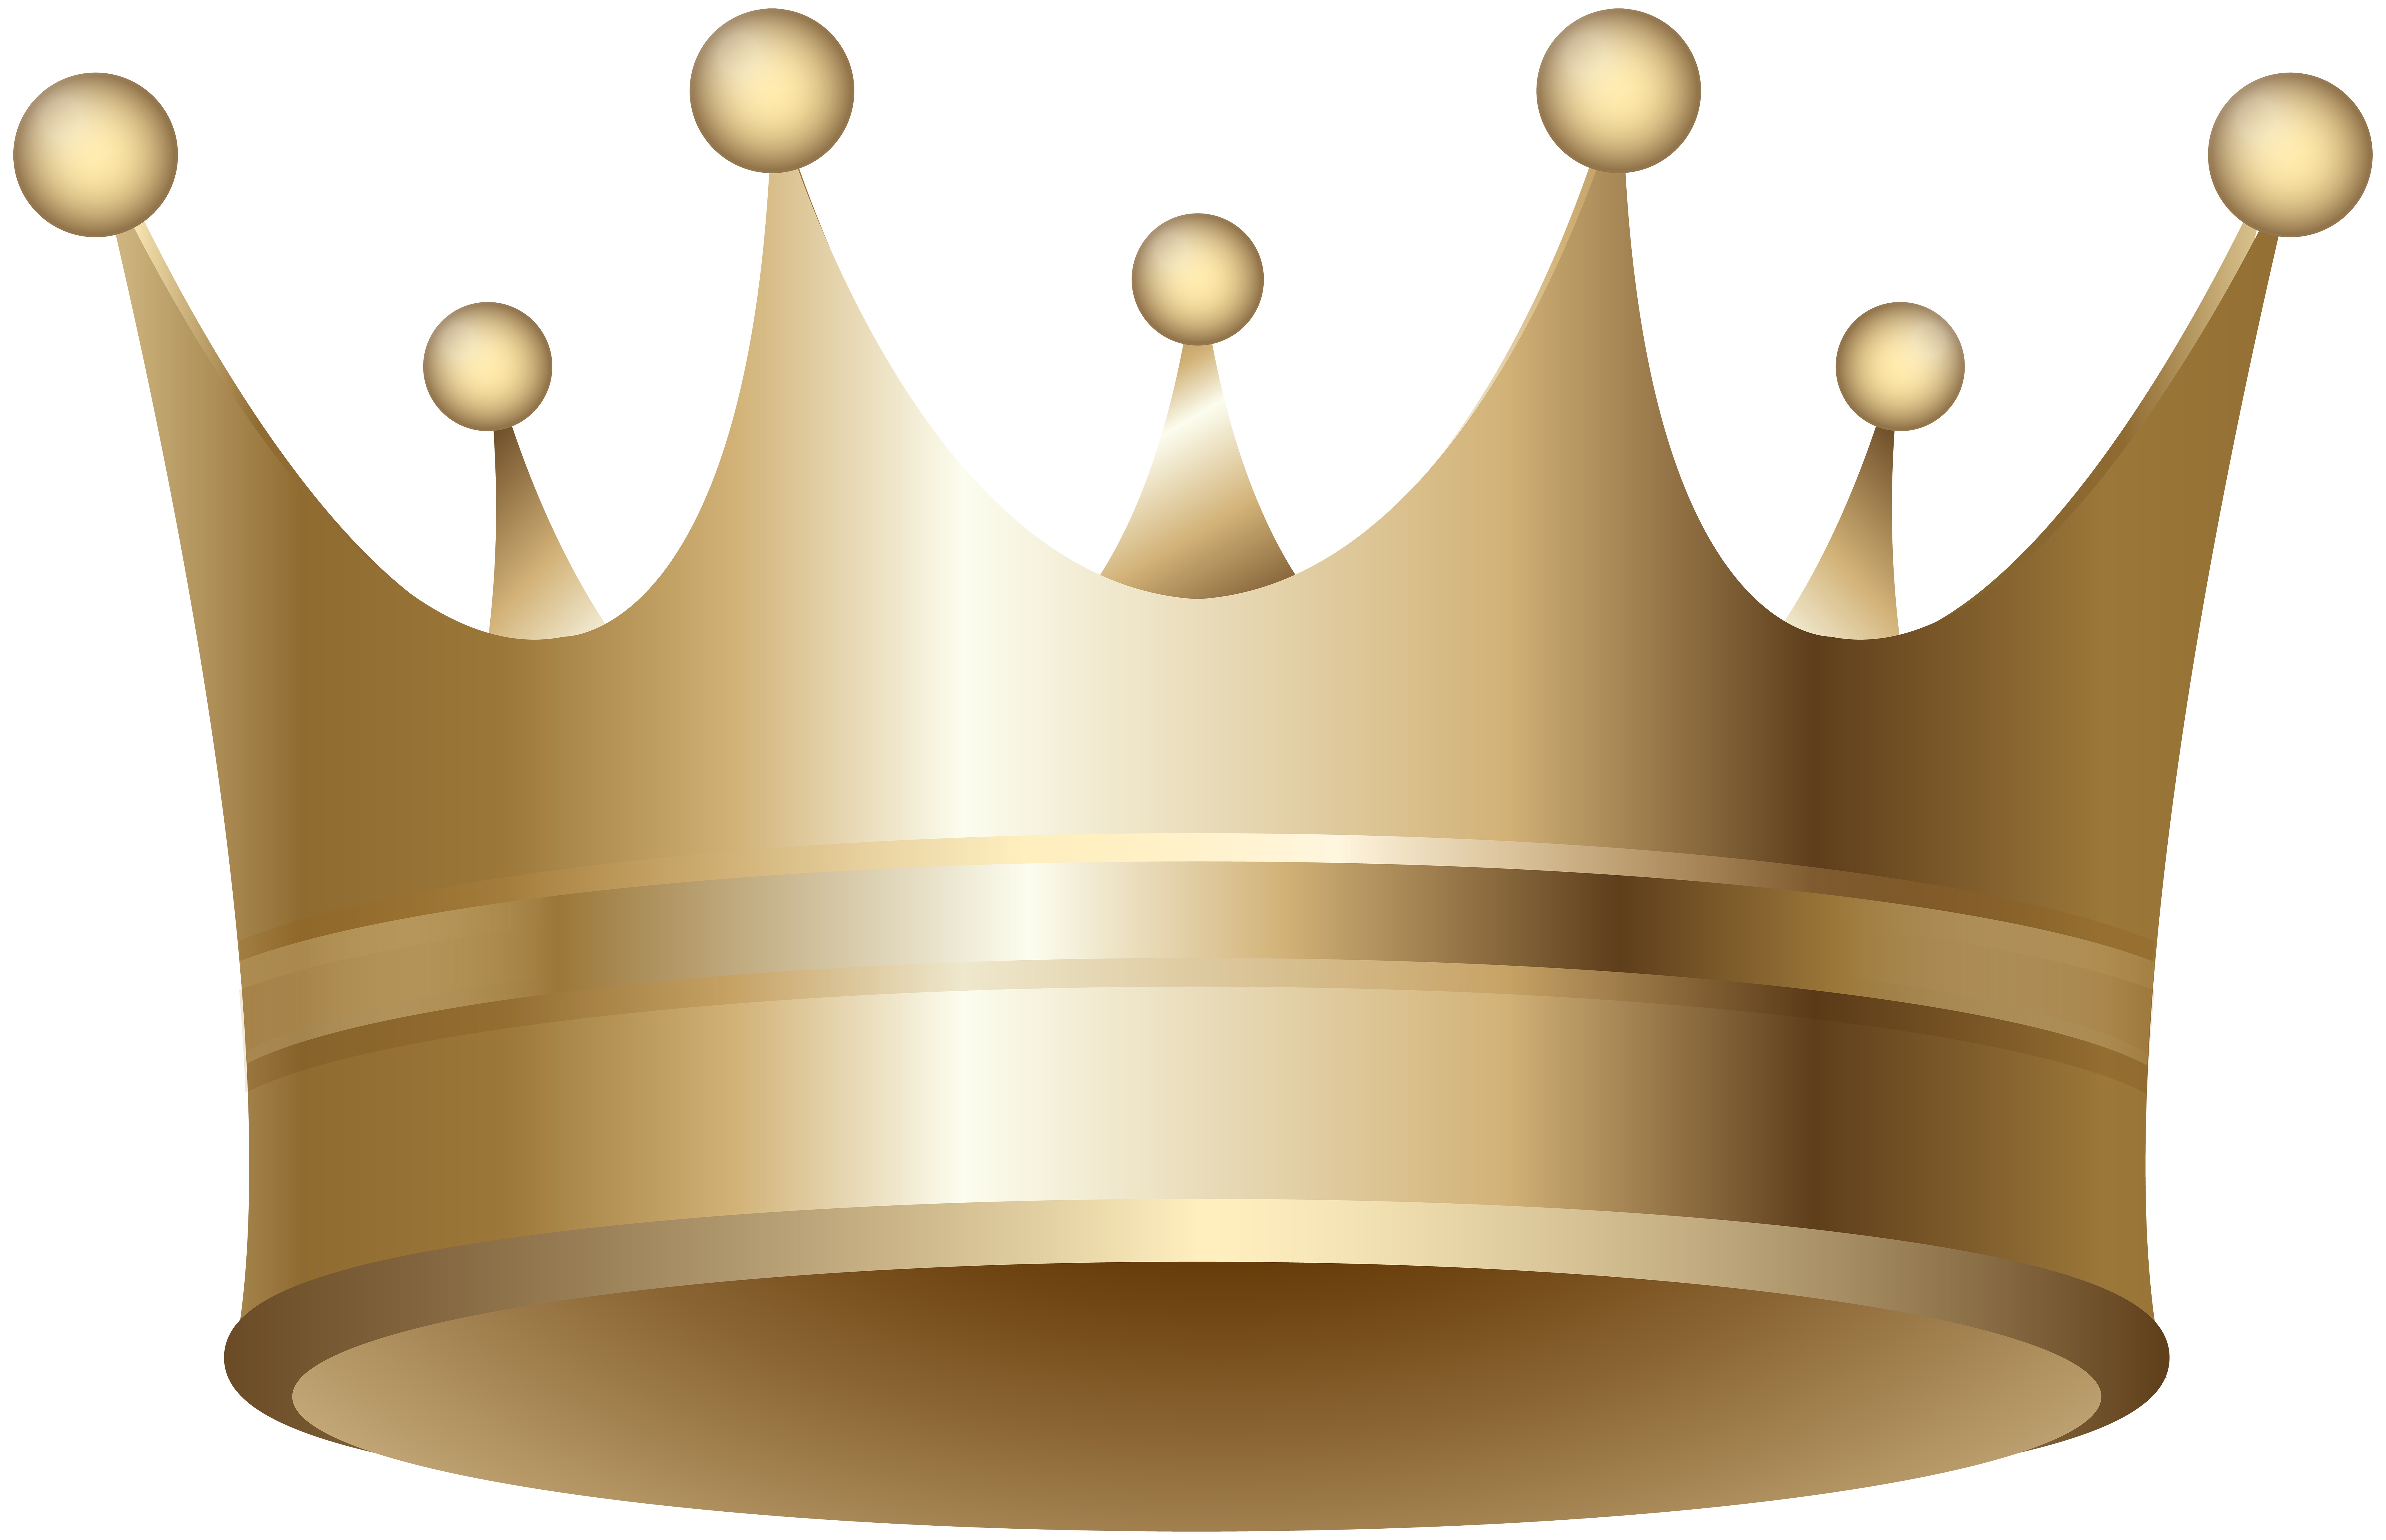 crowns clipart orange crown